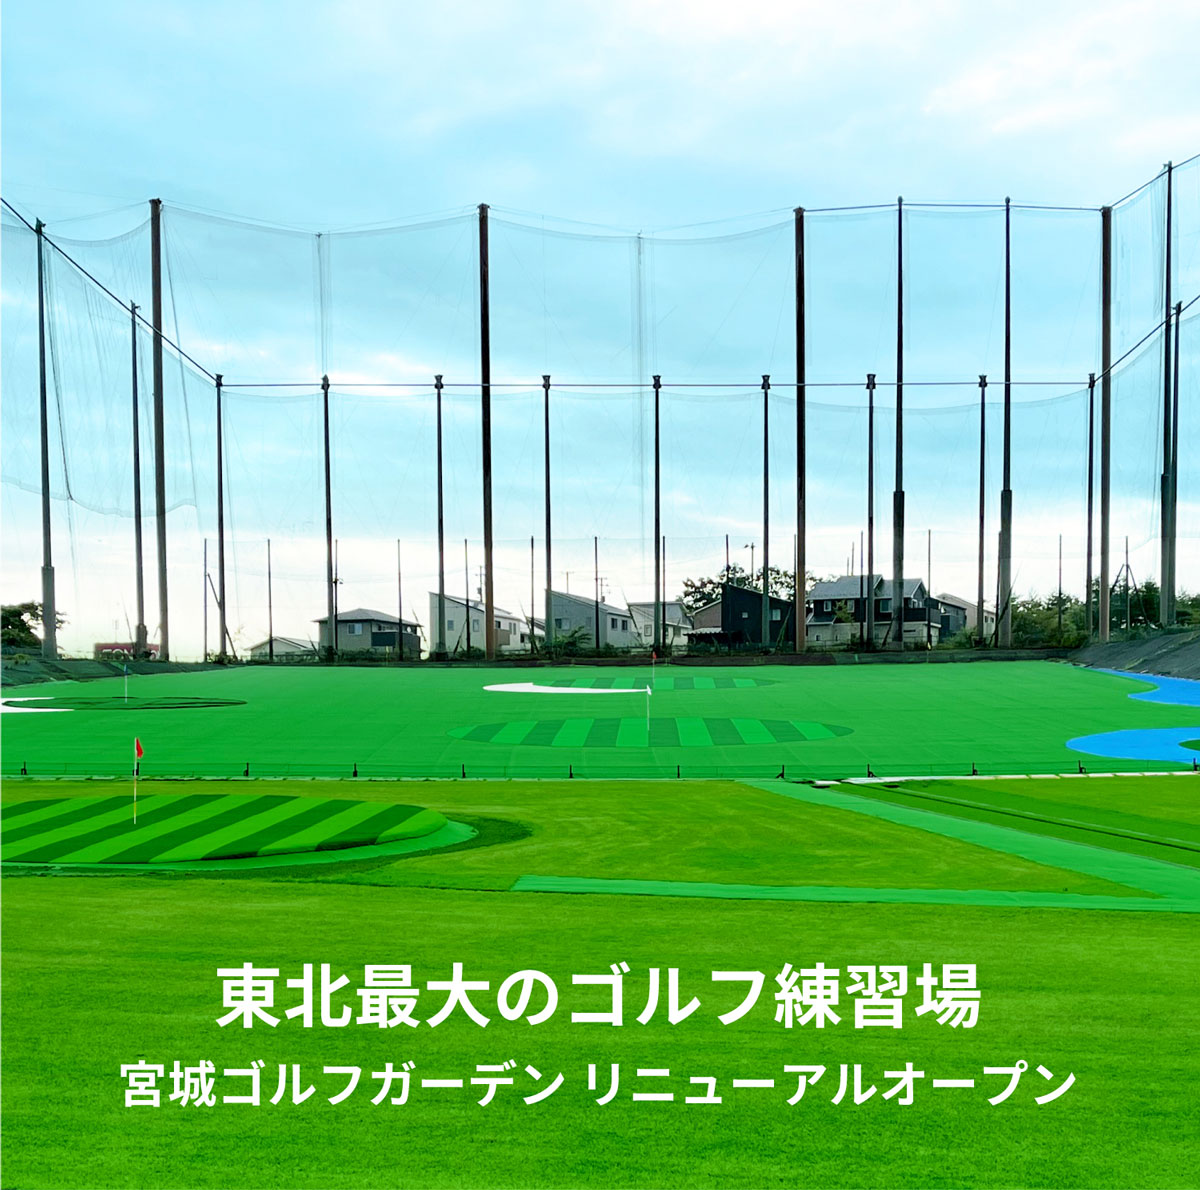 東北最大のゴルフ練習場 宮城ゴルフガーデン リニューアルオープン